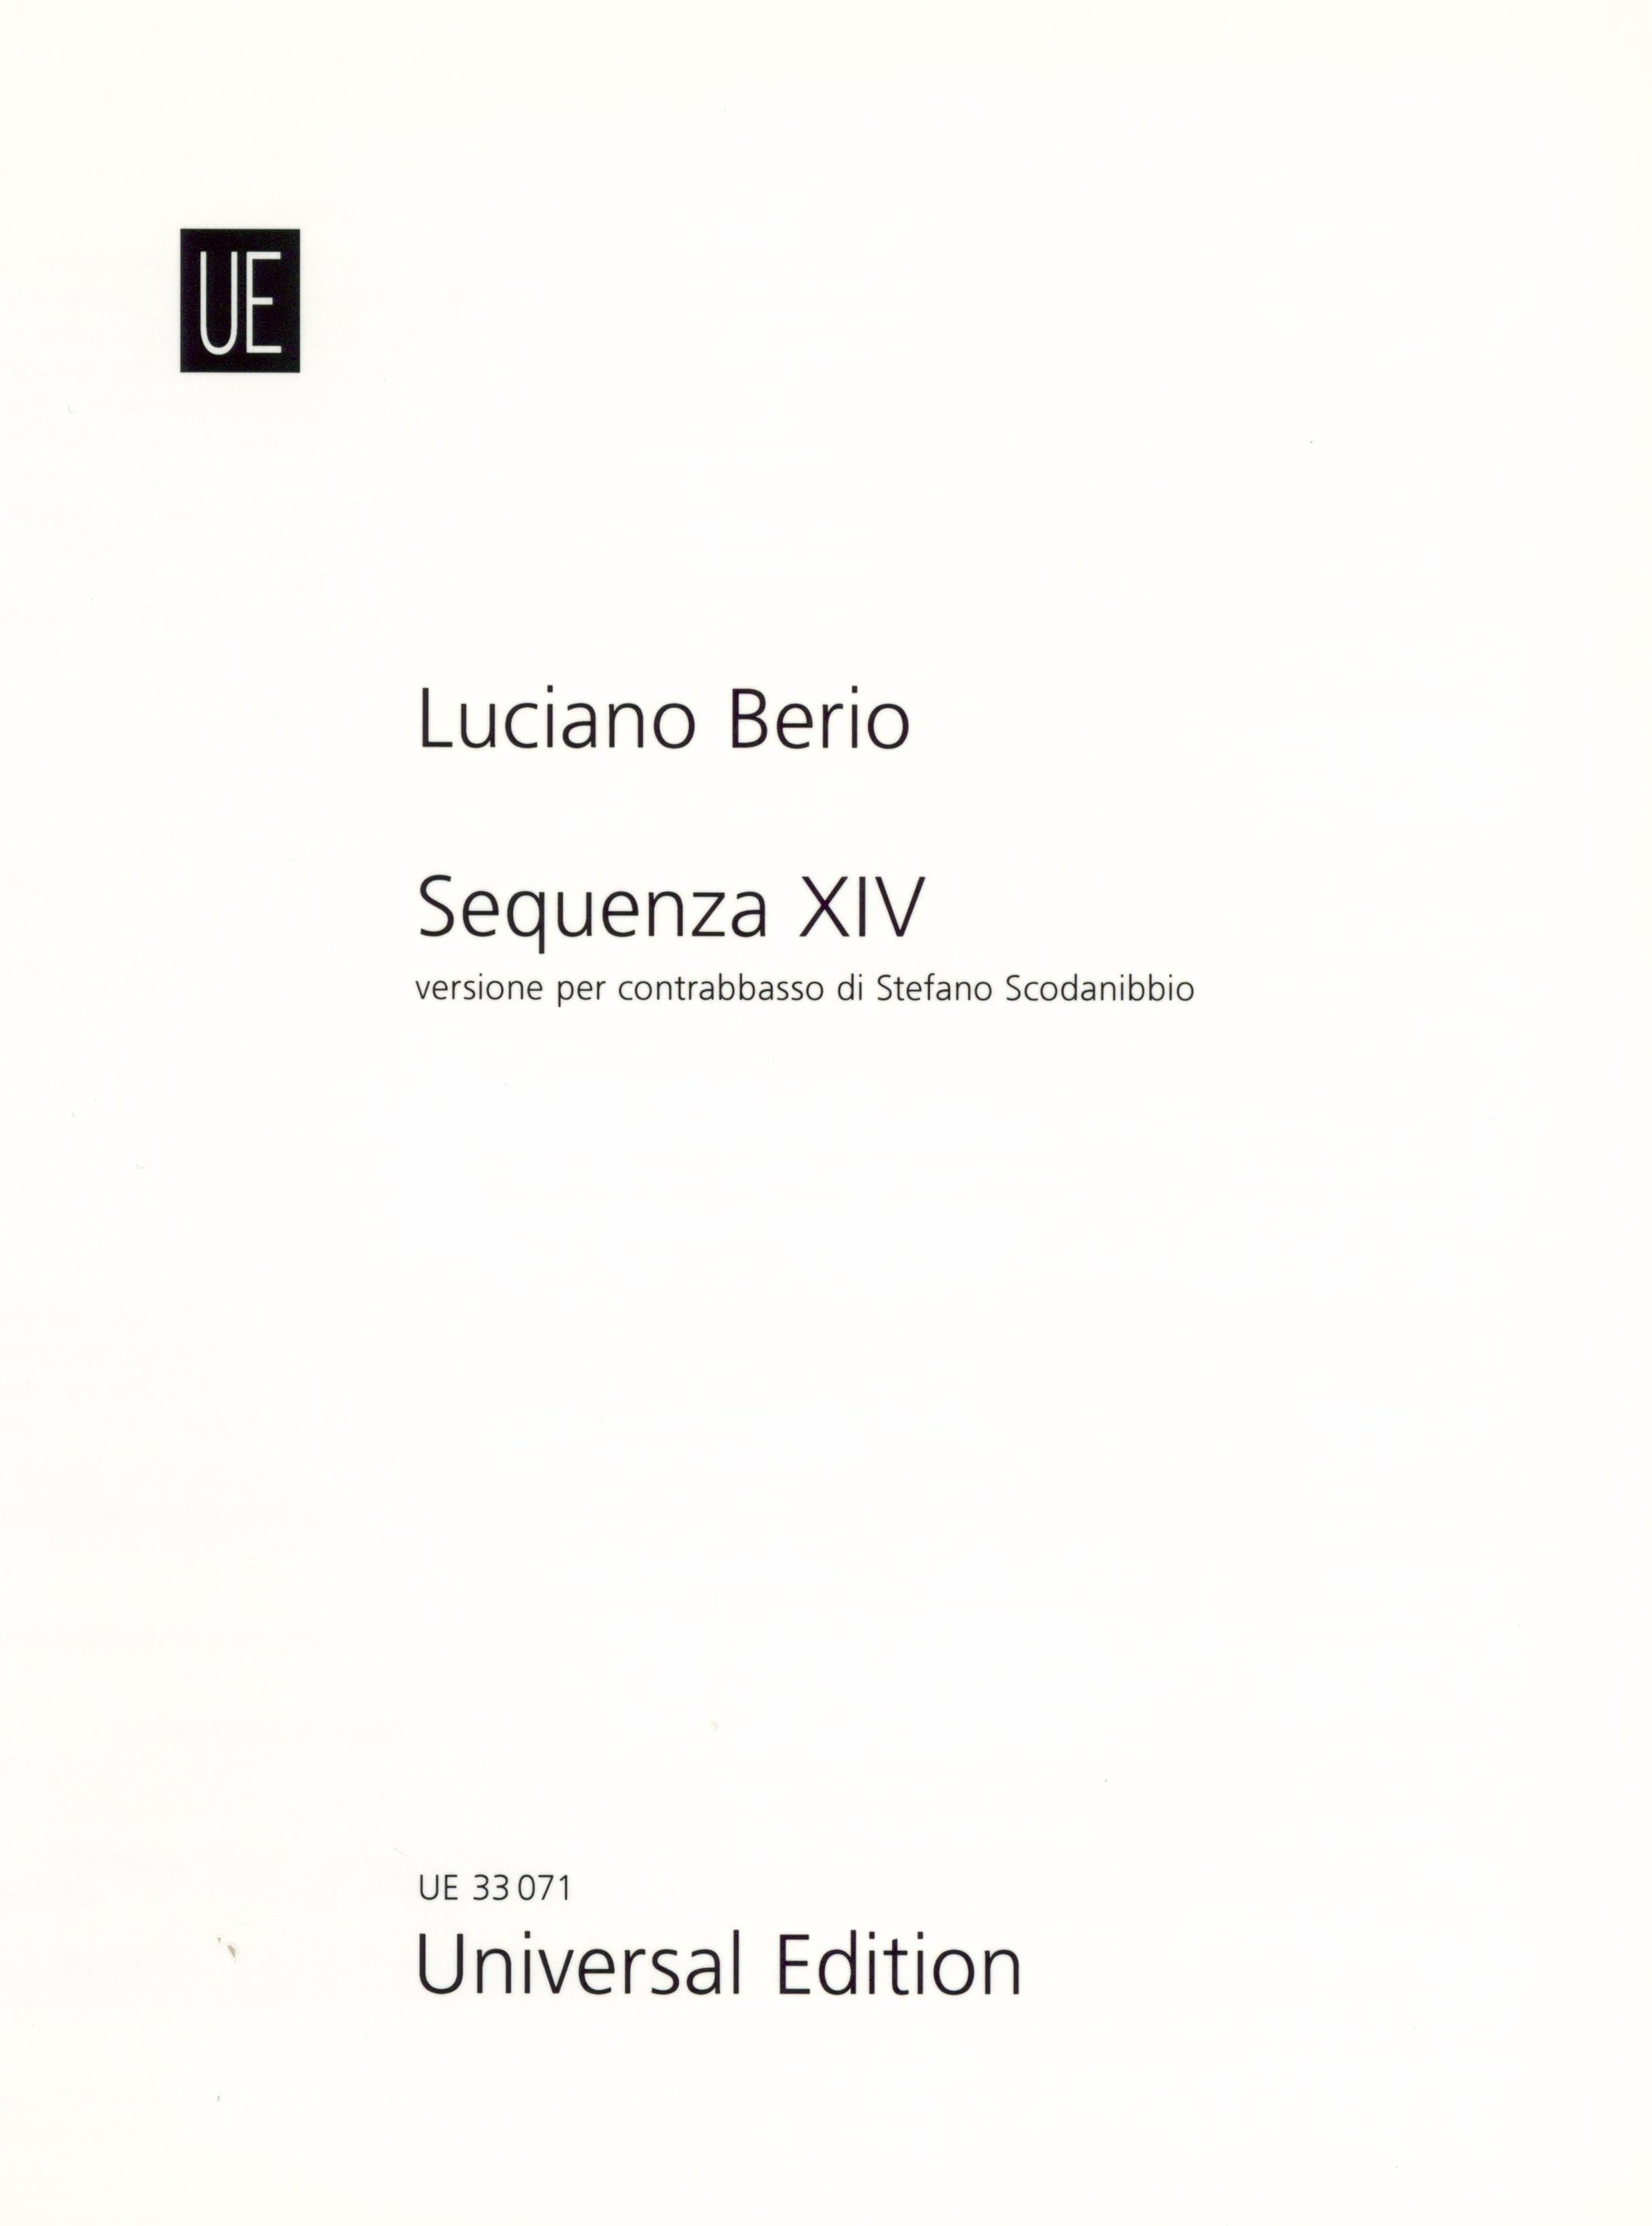 Berio: Sequenza XIVb